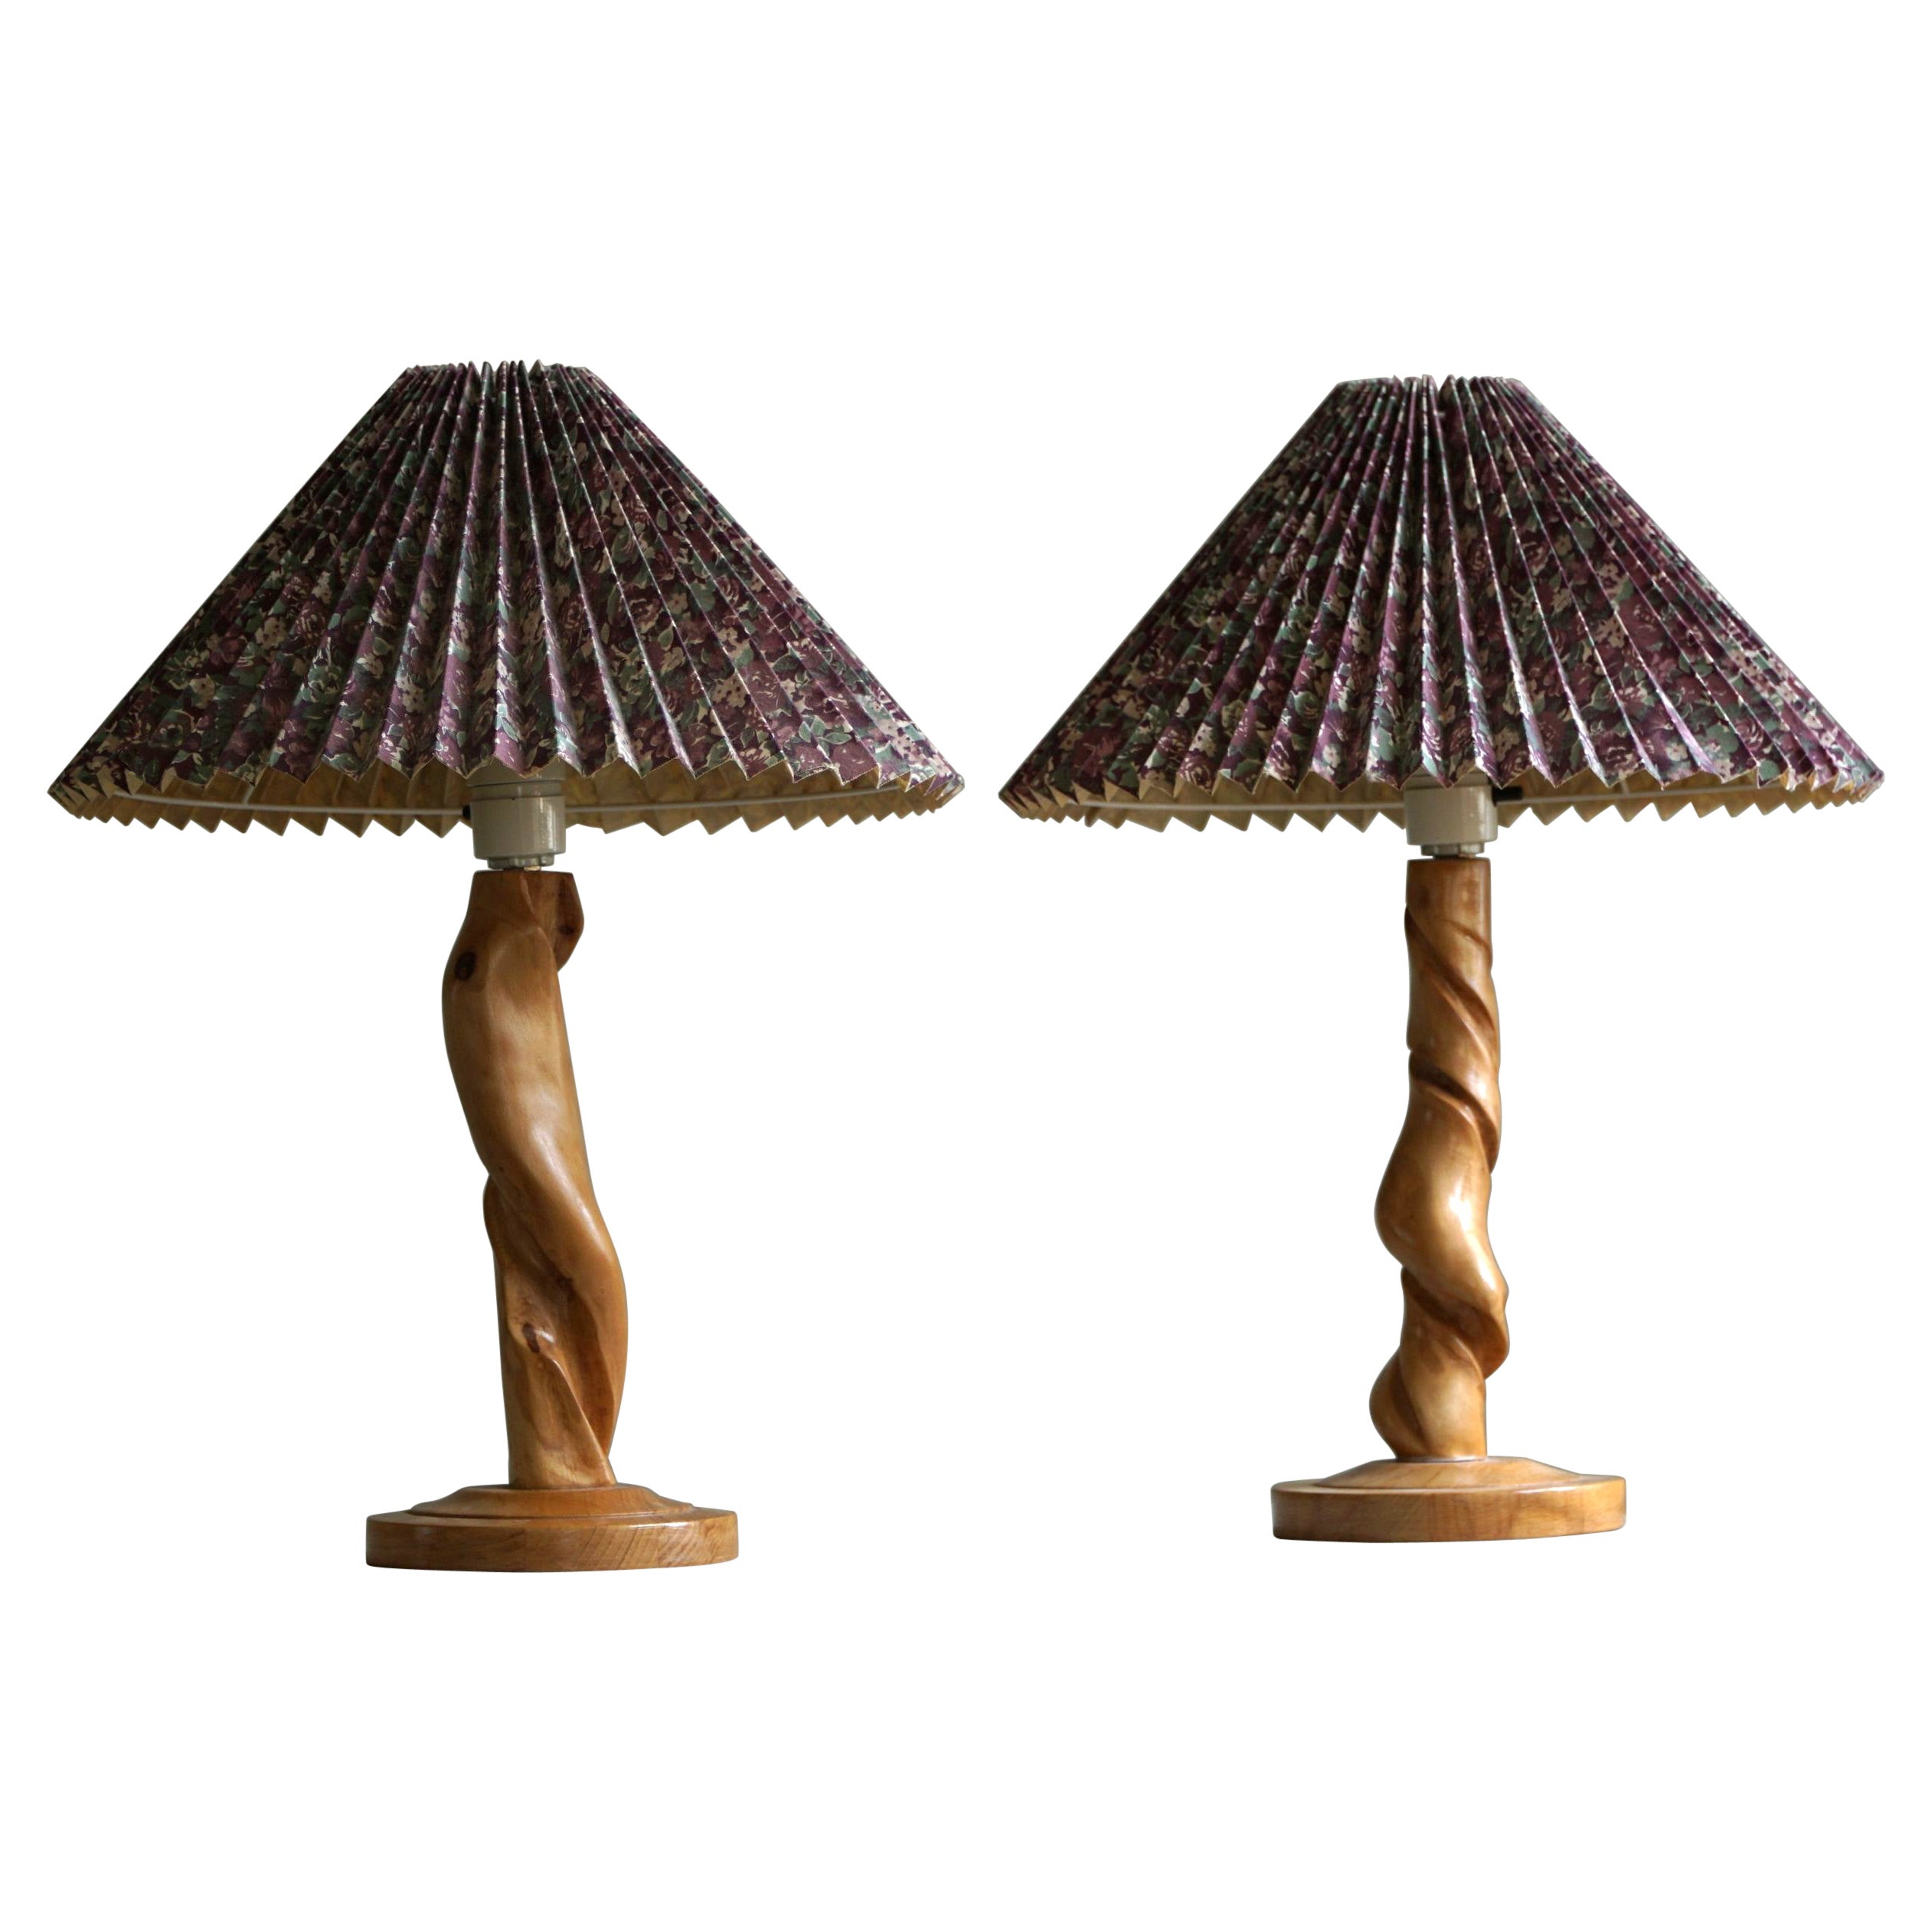 Pair of Sculptural Organic Wooden Table Lamps, Scandinavian Modern, 1970s